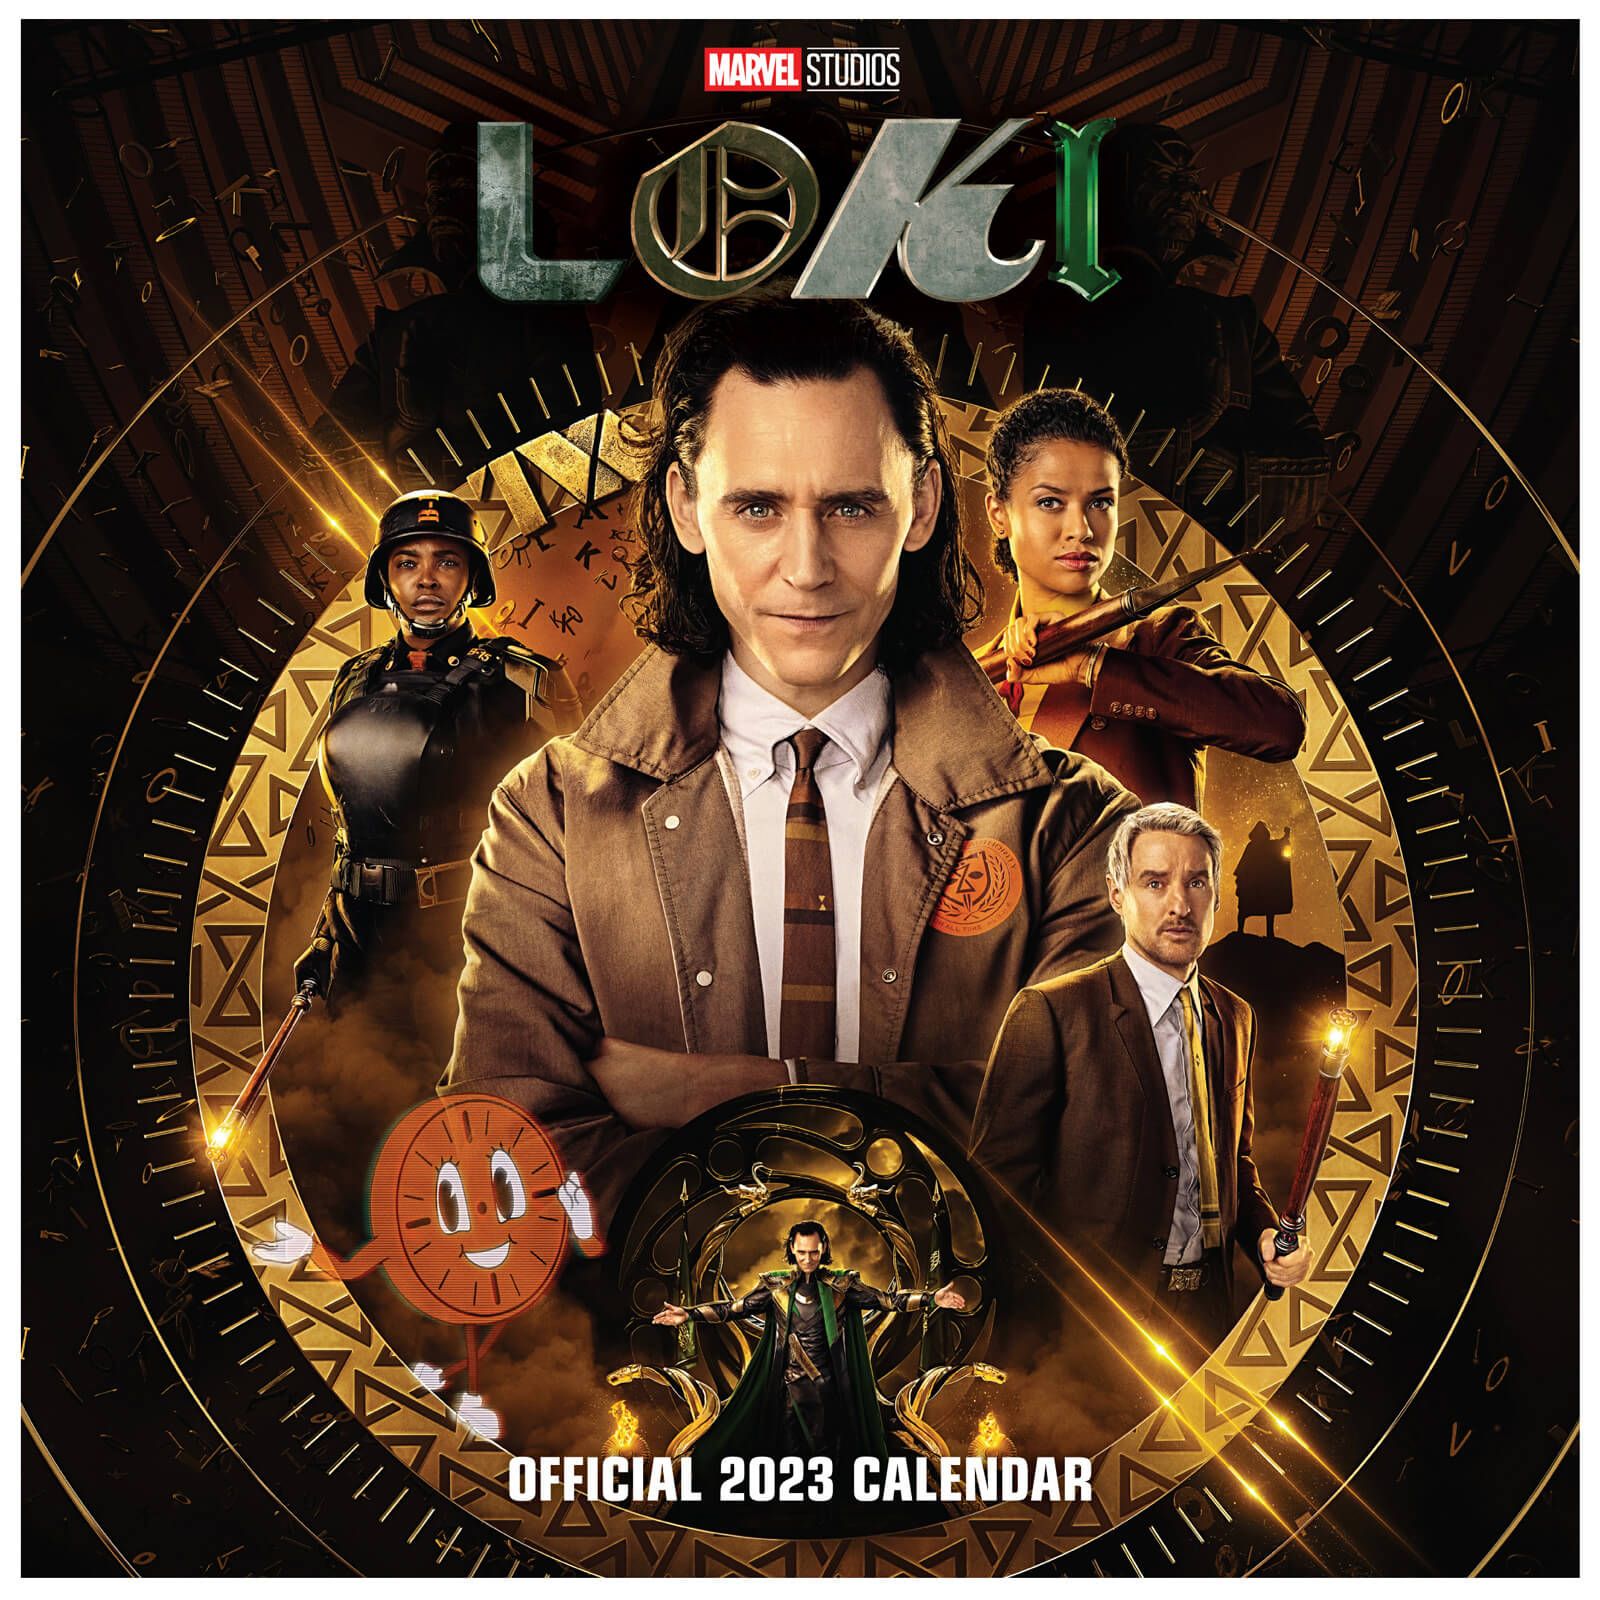 Kalendarz Ścienny 2023 Marvel Loki. Kliknij i kup sklep Nice Wall